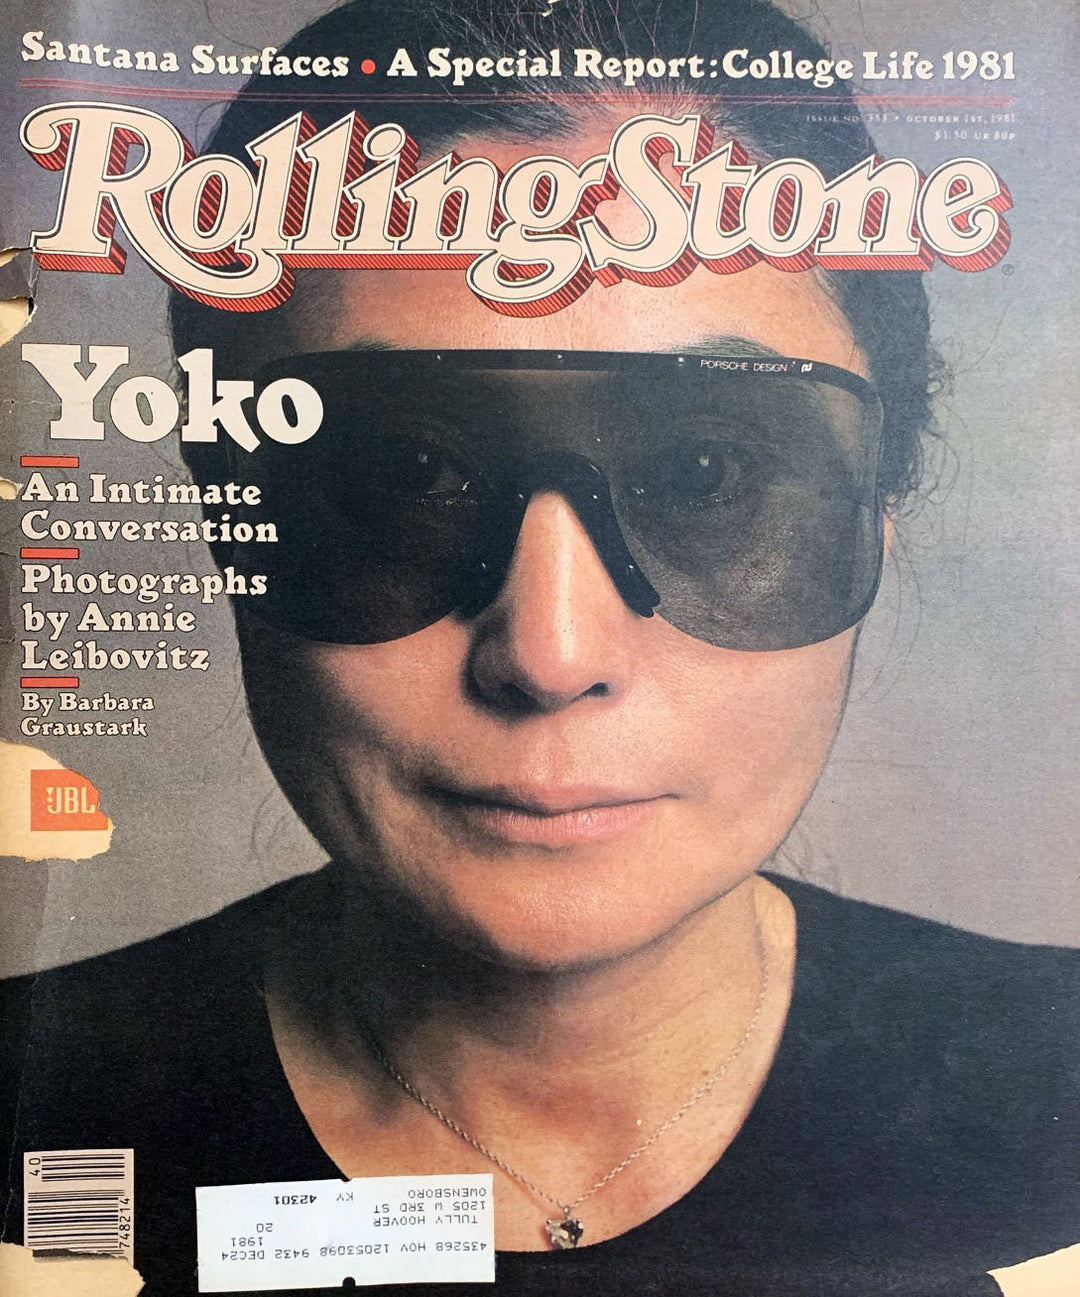 Yoko Ono Wraparound sunglasses